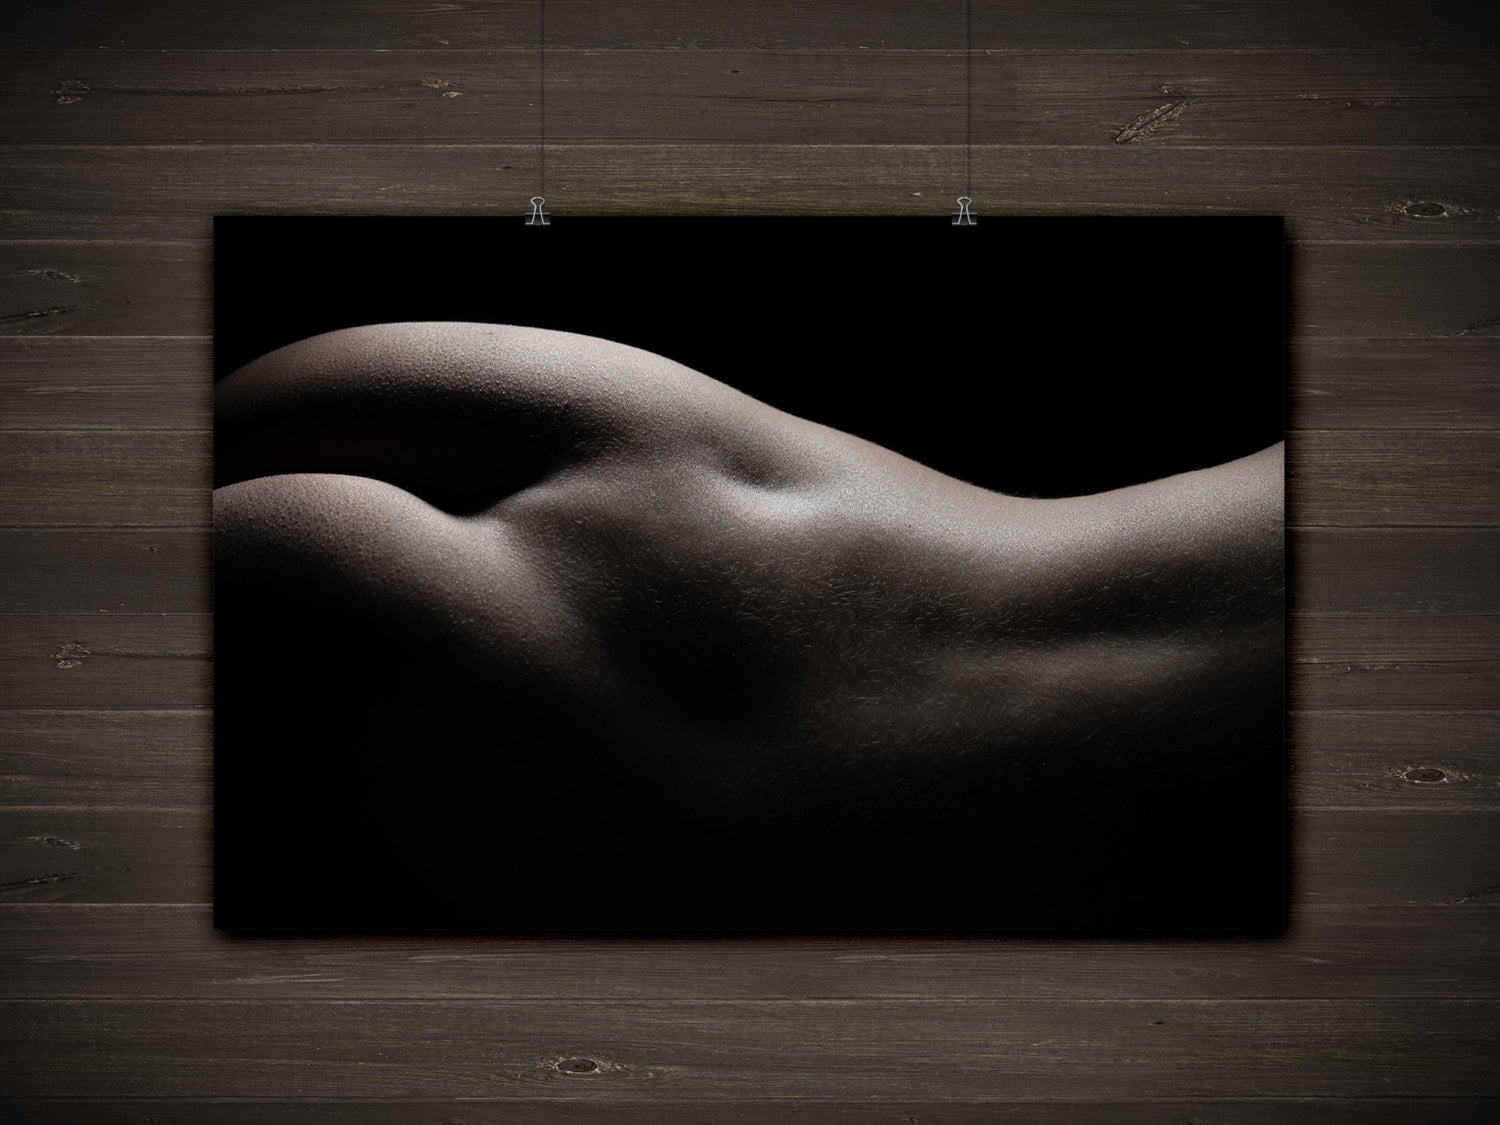 Erotic Female Nude Art 46